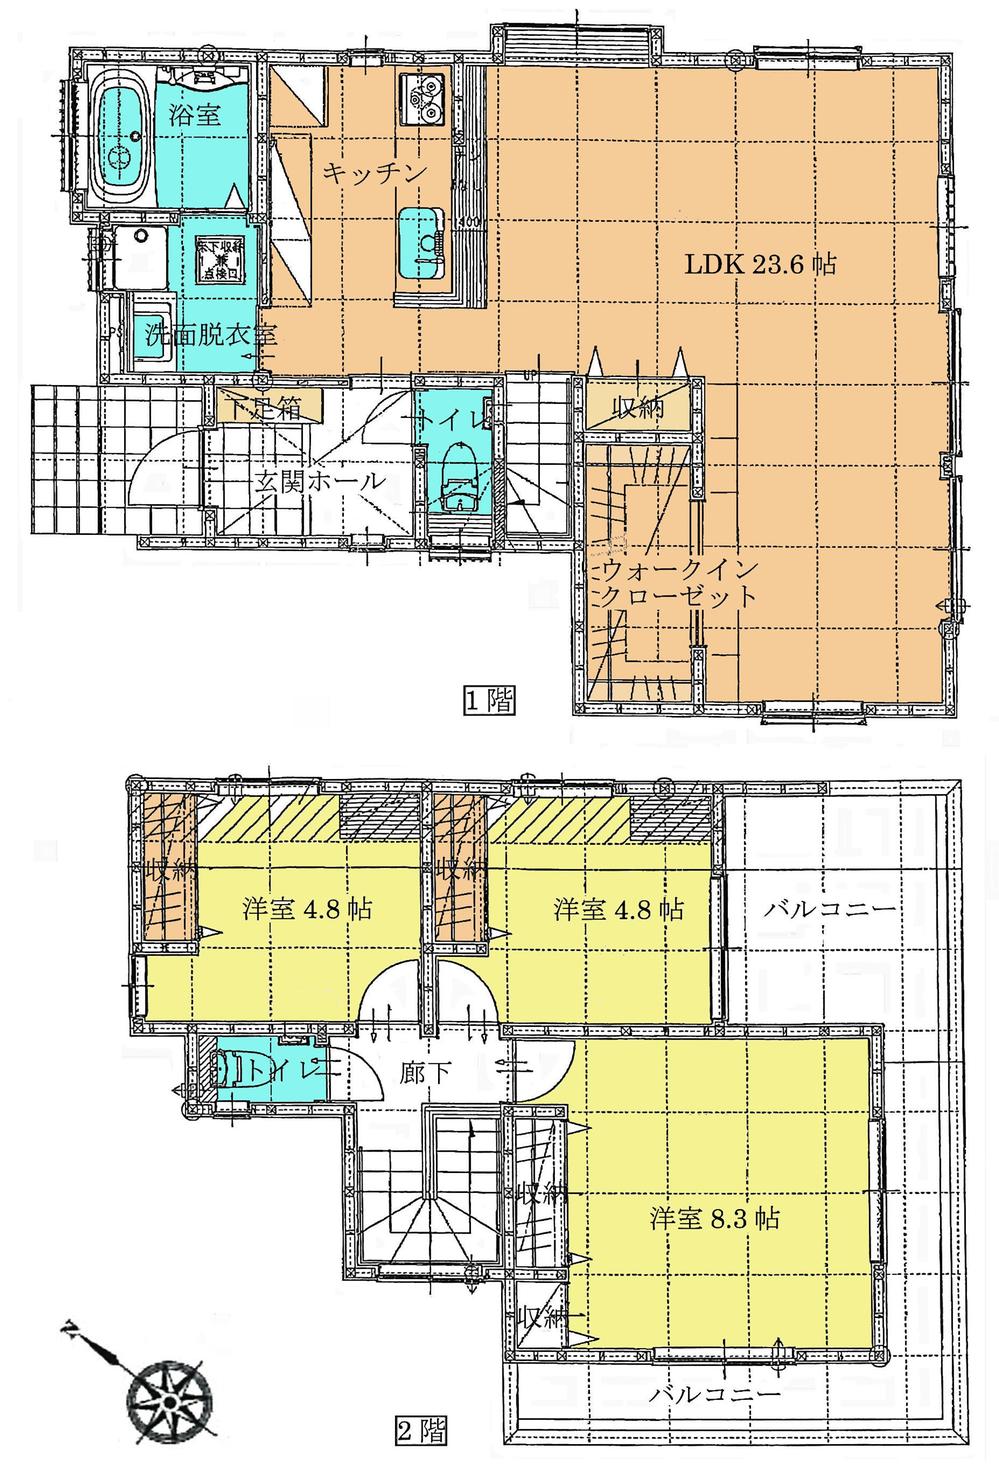 Floor plan. 29,800,000 yen, 3LDK, Land area 124.42 sq m , It is a building area of ​​101.02 sq m floor plan